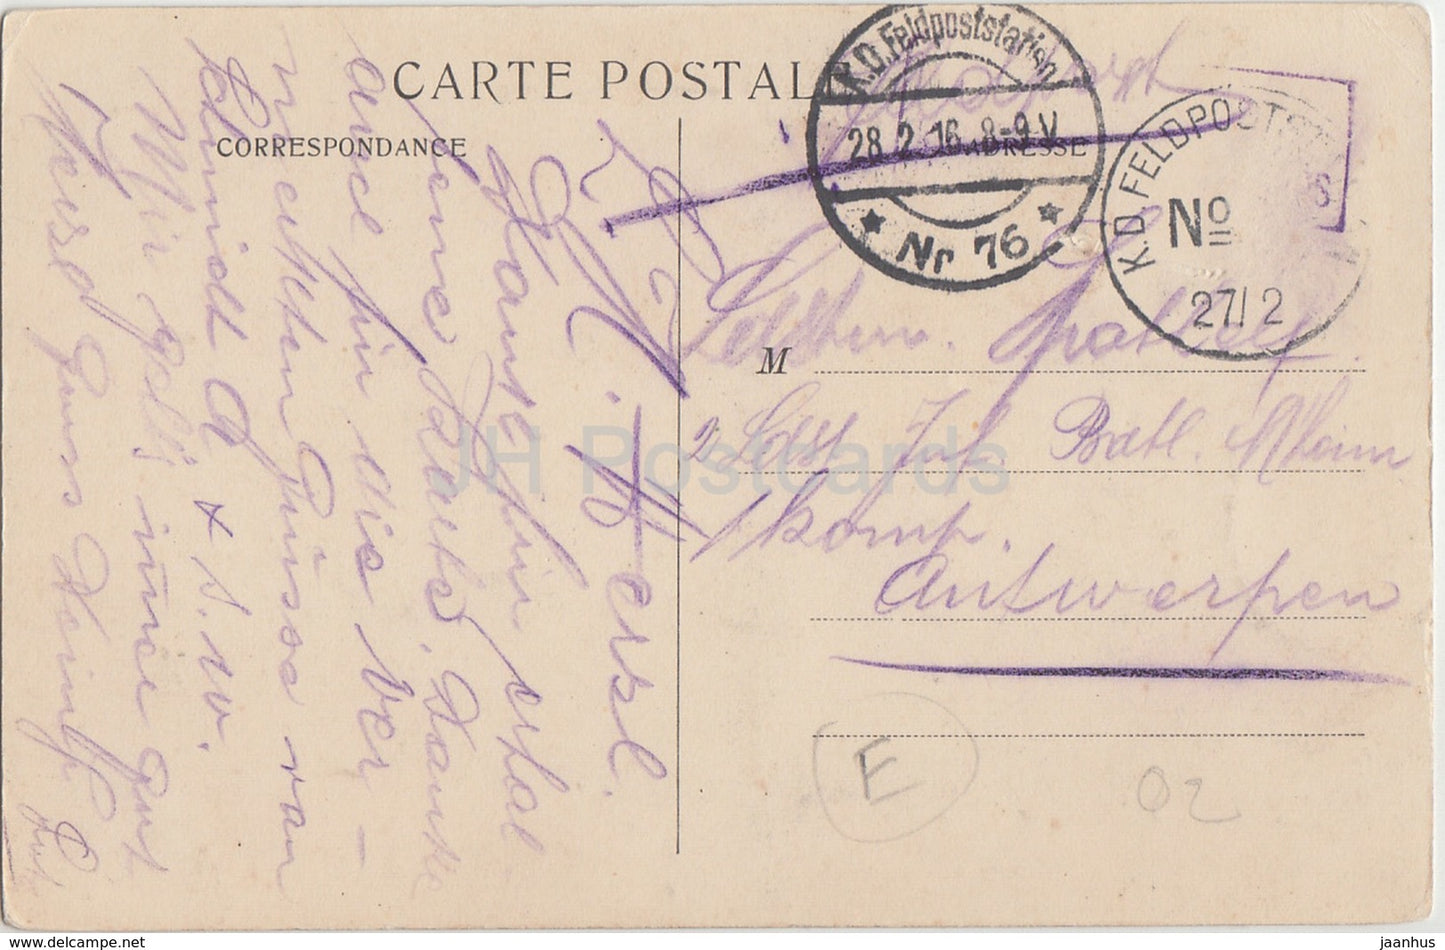 Laon - La Cathedrale - Vue du chevet prise du Palais de Justice - 1916 - Feldpost - alte Postkarte - Frankreich - gebraucht